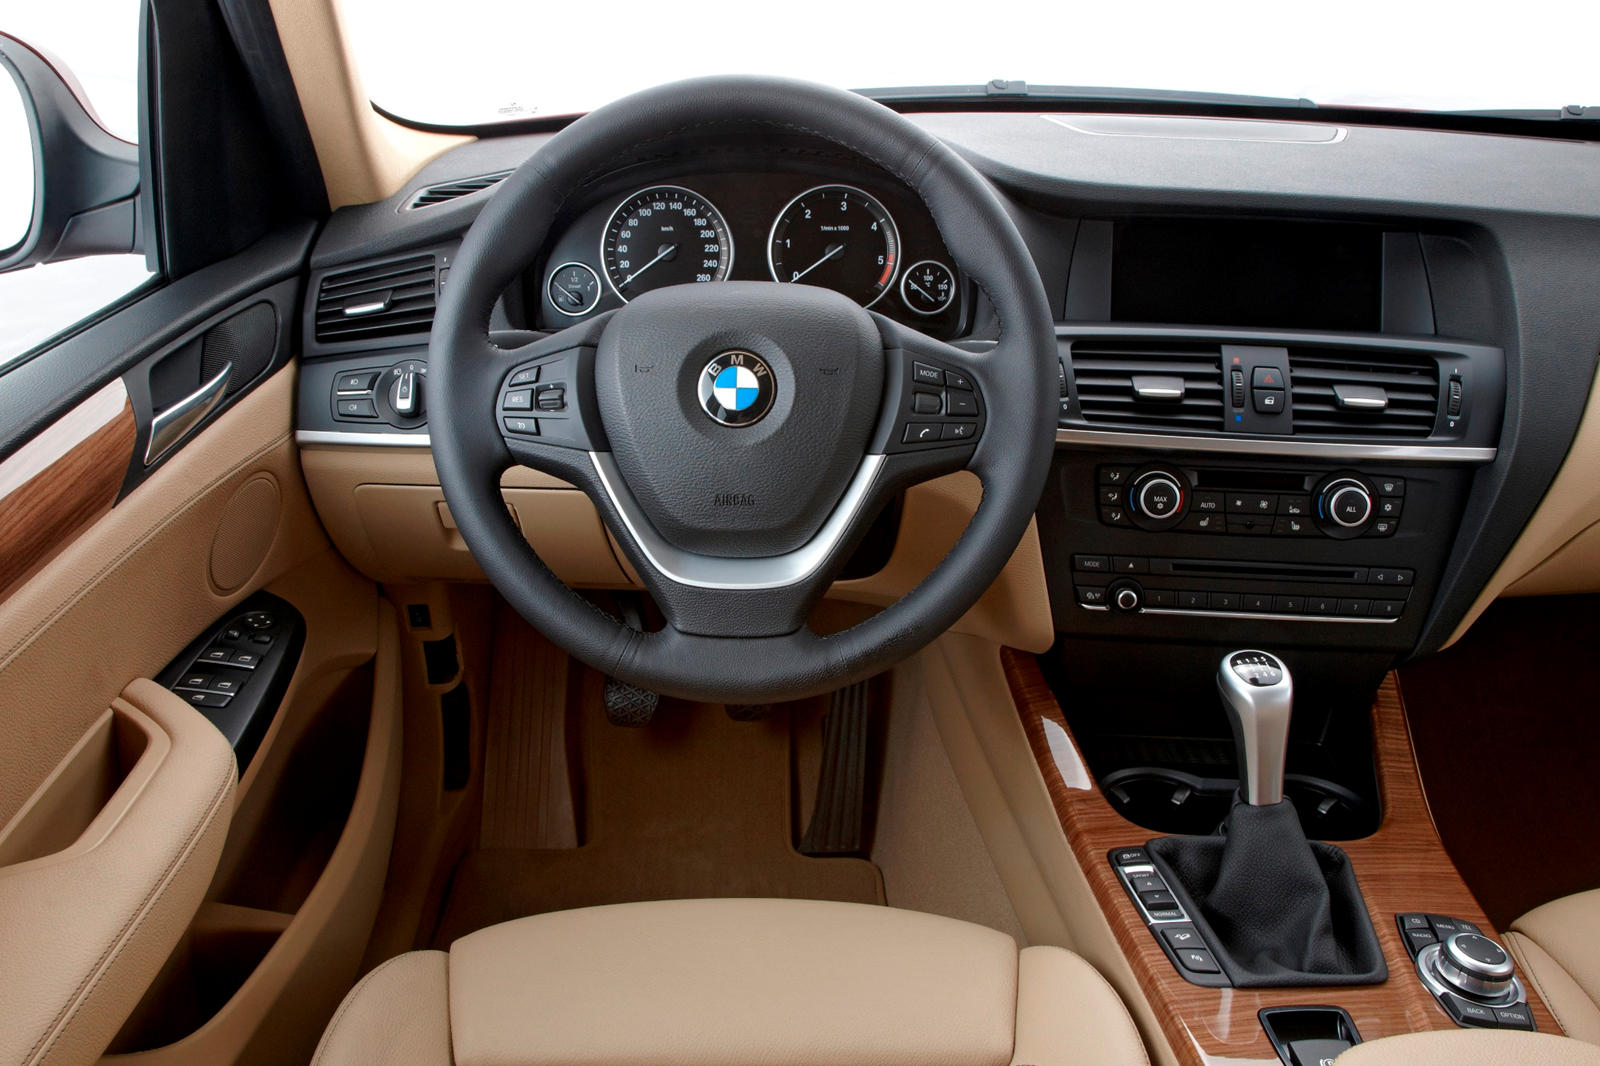 2013 BMW X3 Interior Photos | CarBuzz